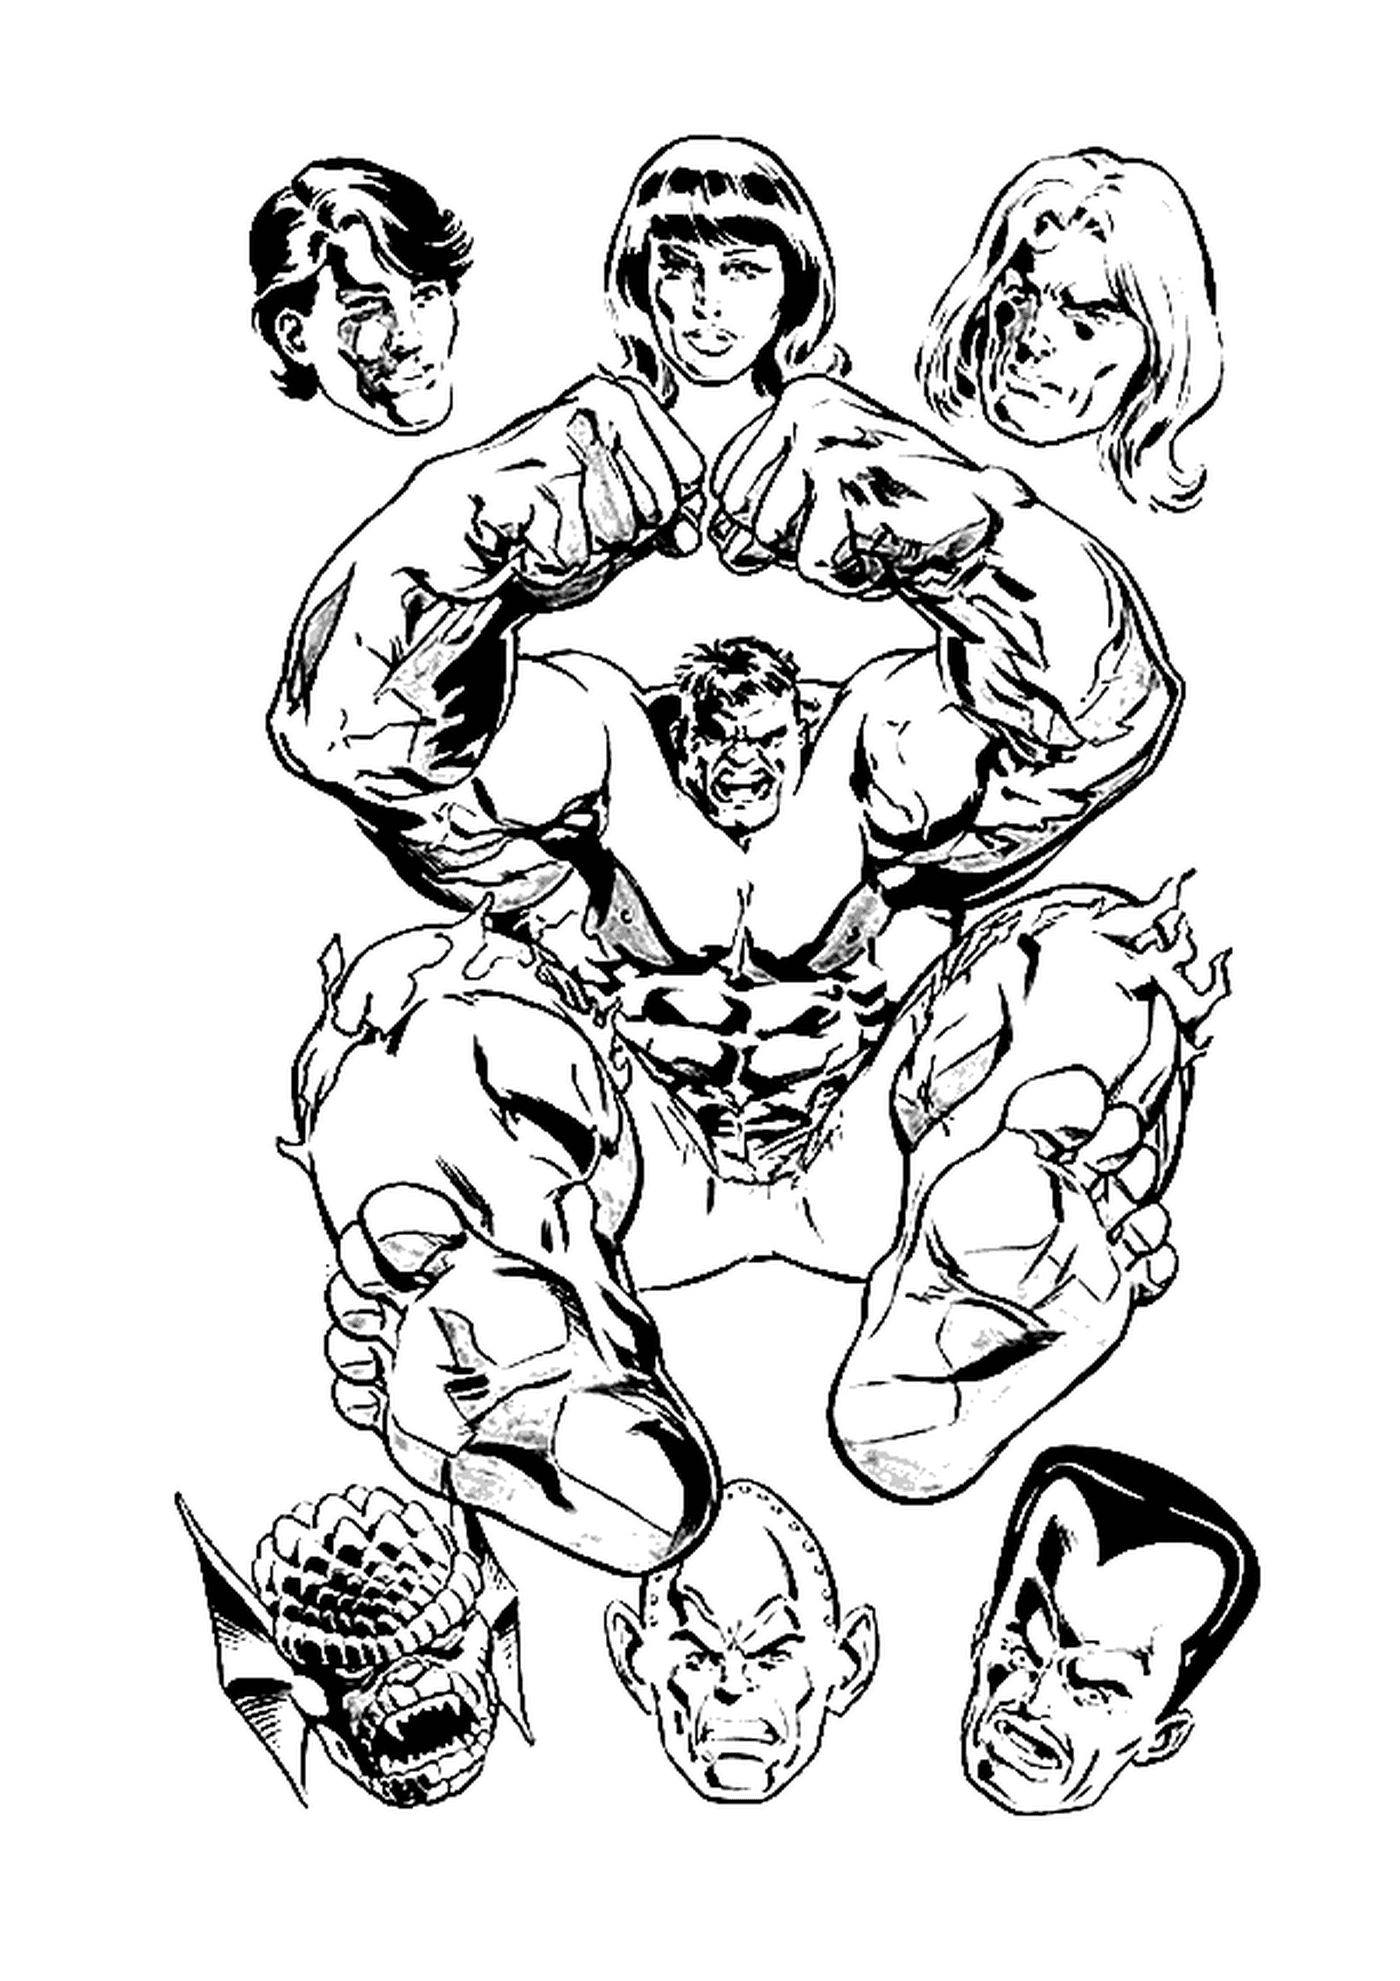   Hulk et les têtes de personnages 